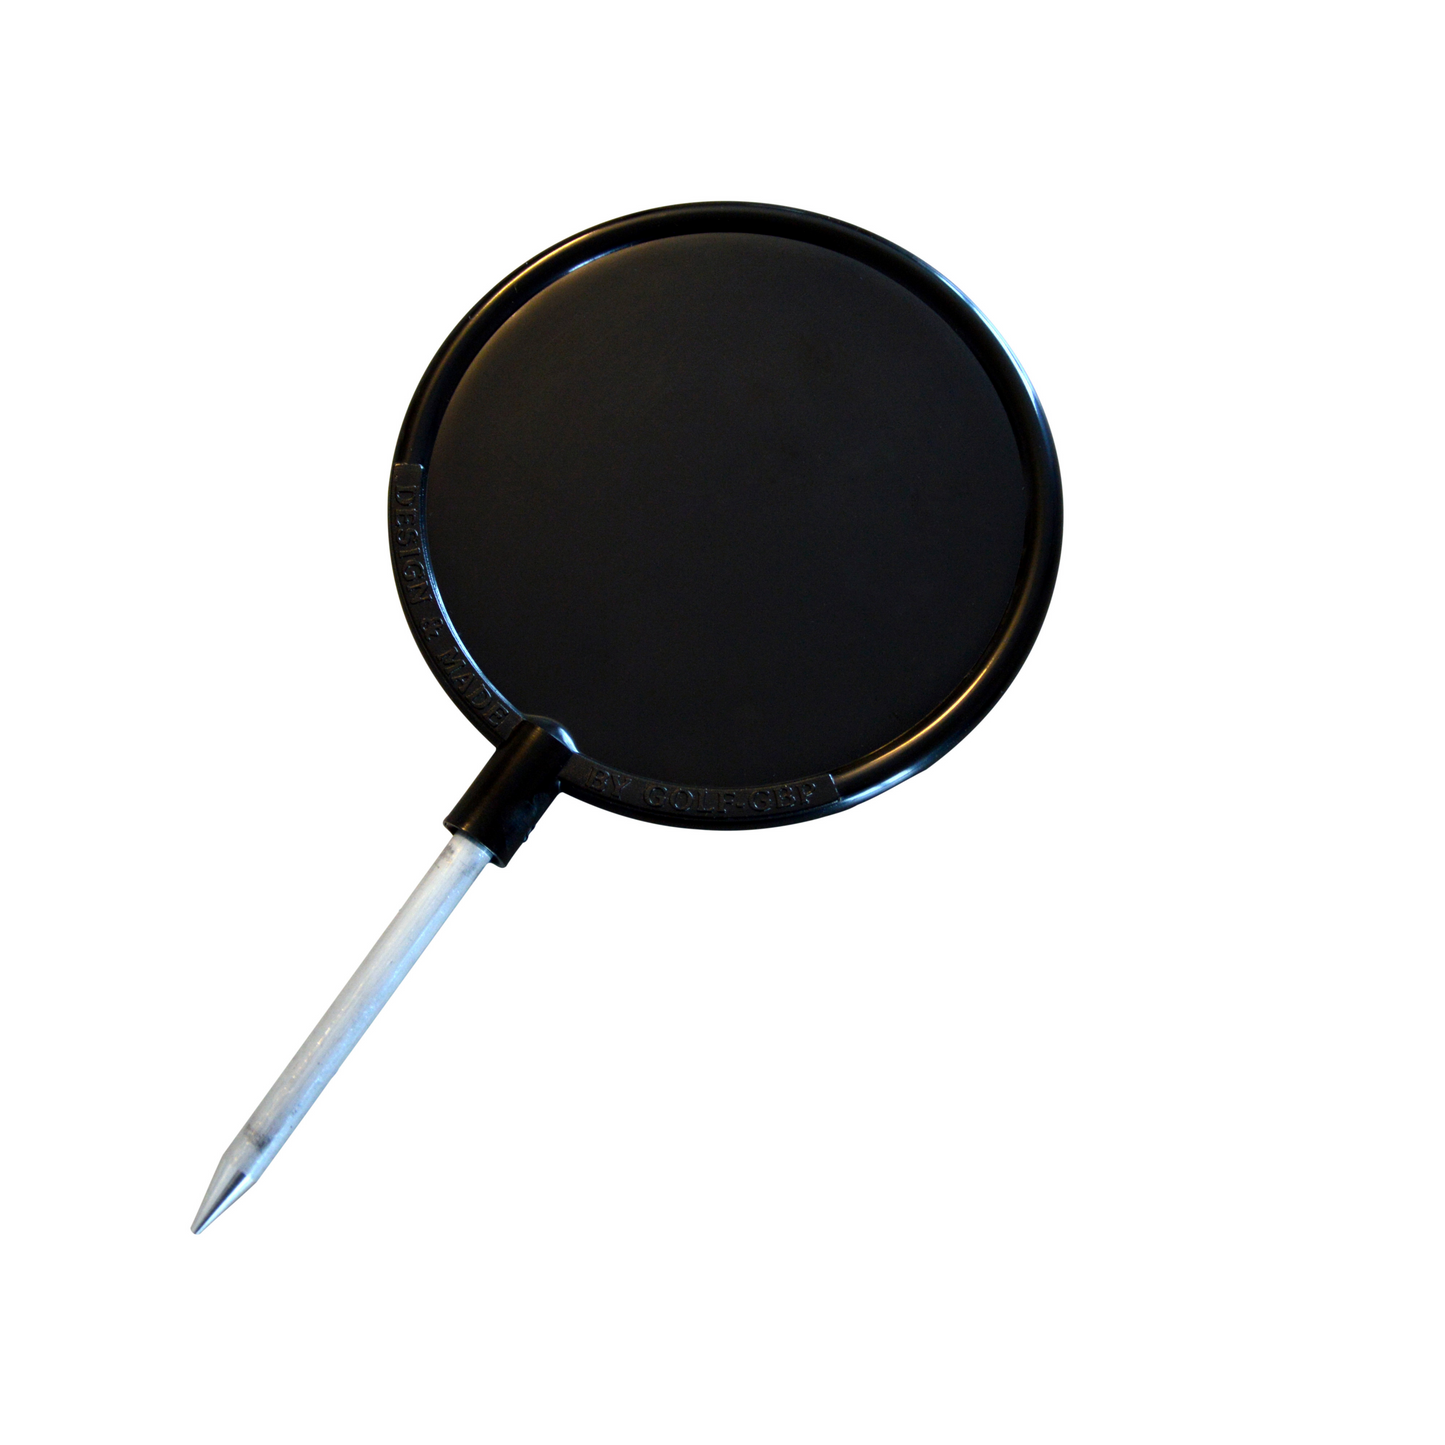 Tee-markering modell Round, Ø 12 cm, svart